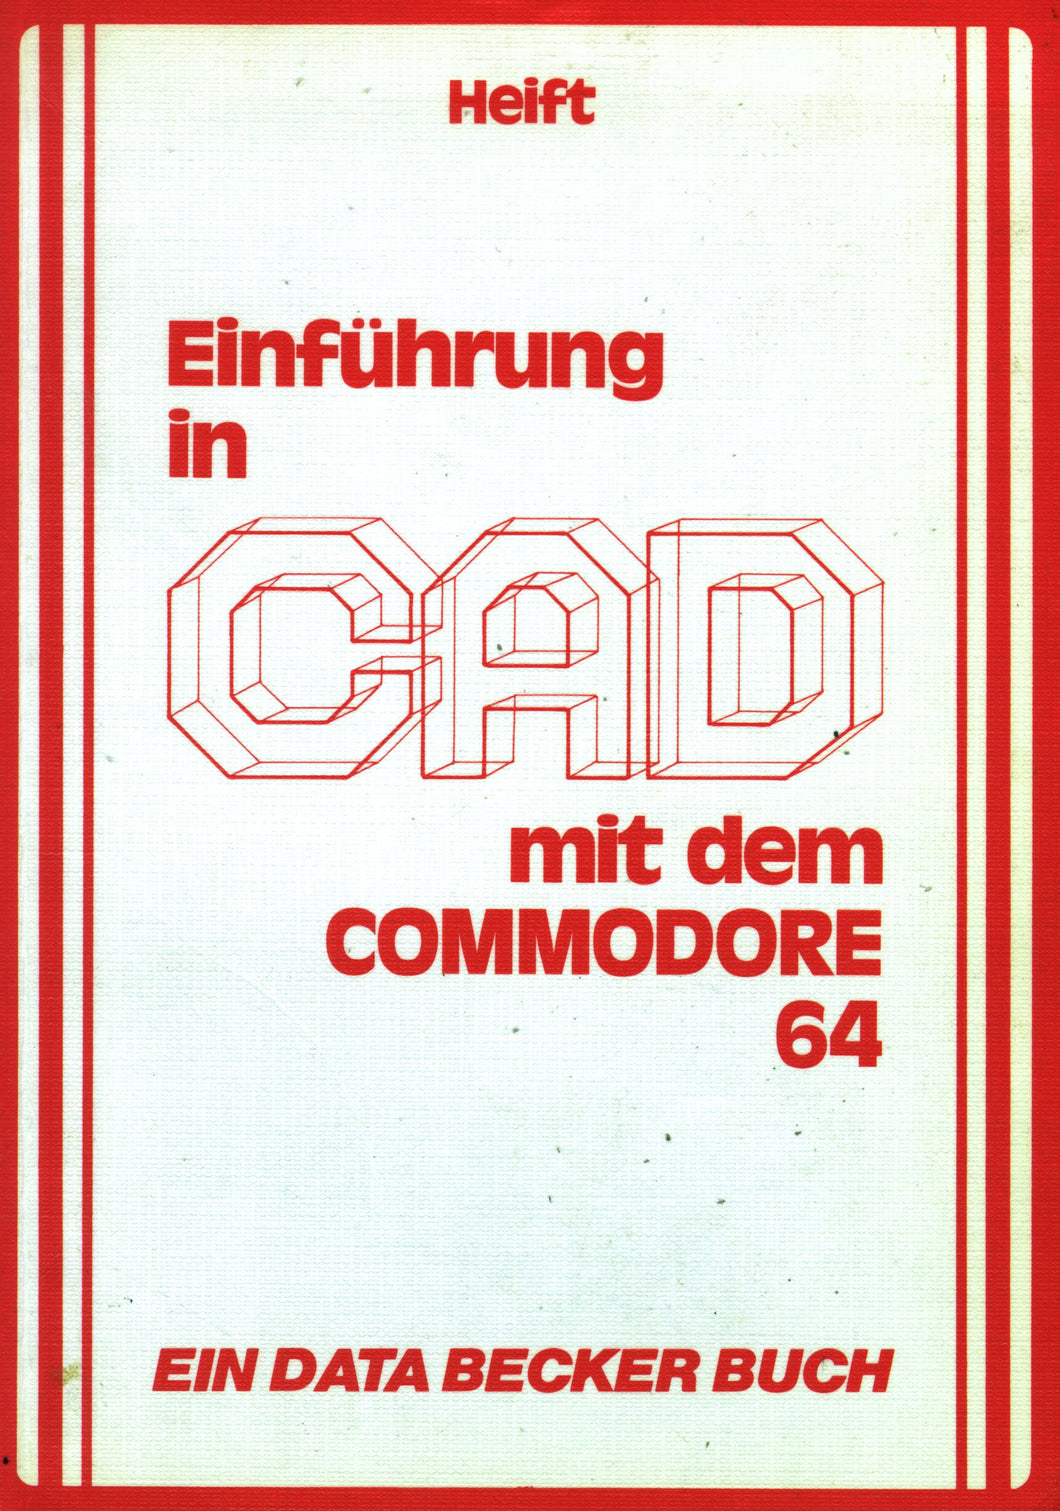 Einführung in CAD mit dem Commodore 64